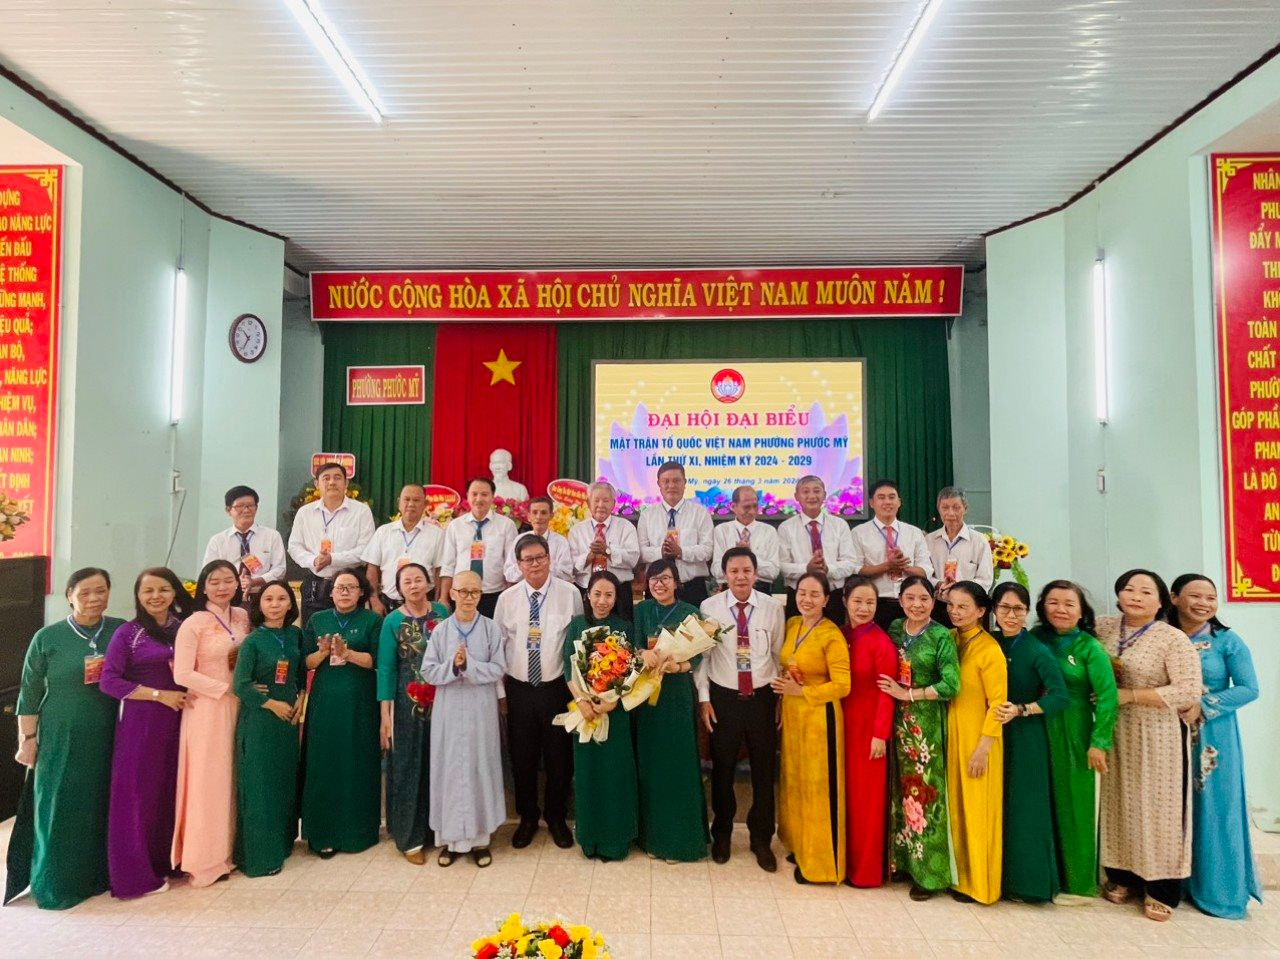 Các đại biểu phường Phước Mỹ, TP. Phan Rang - Tháp Chàm ra mắt đại hội nghiệm kỳ 2024 – 2029.